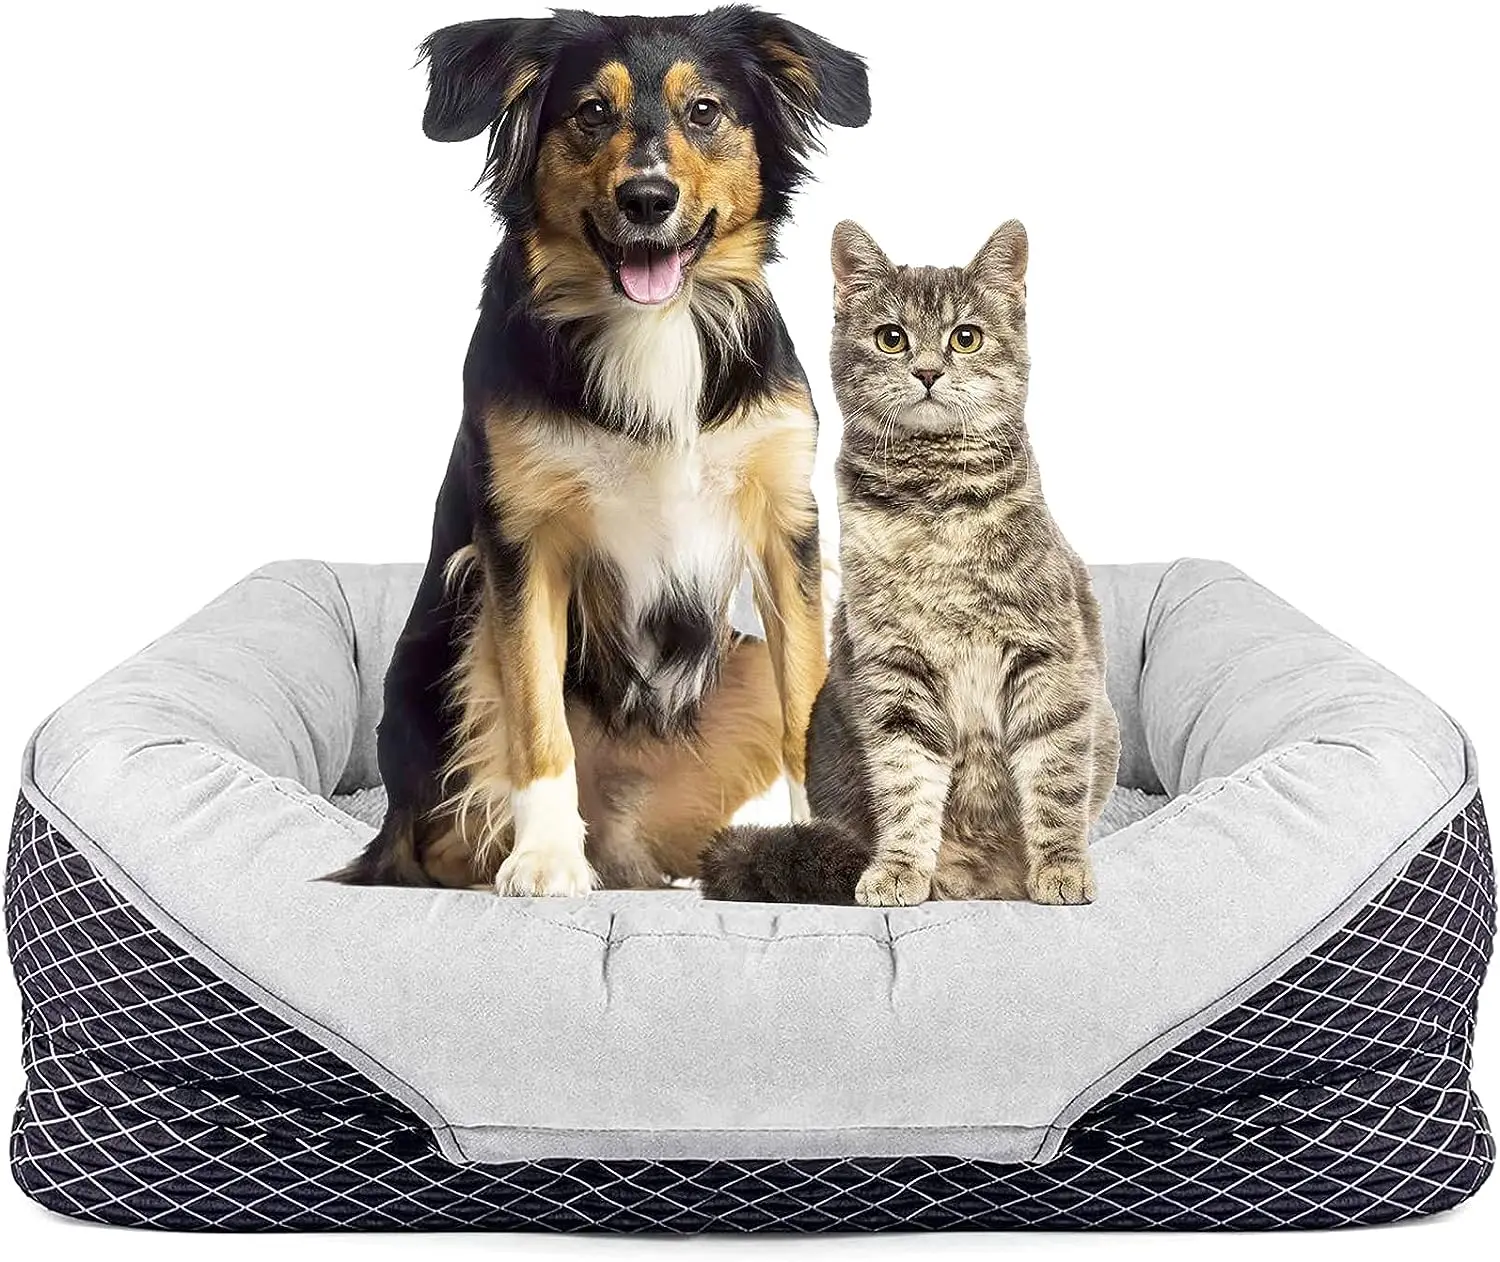 

Большая серая ортопедическая кровать для собак со съемным моющимся покрытием, мягкий хлопковый валик и сверхмягкое плюшевое пространство для сна